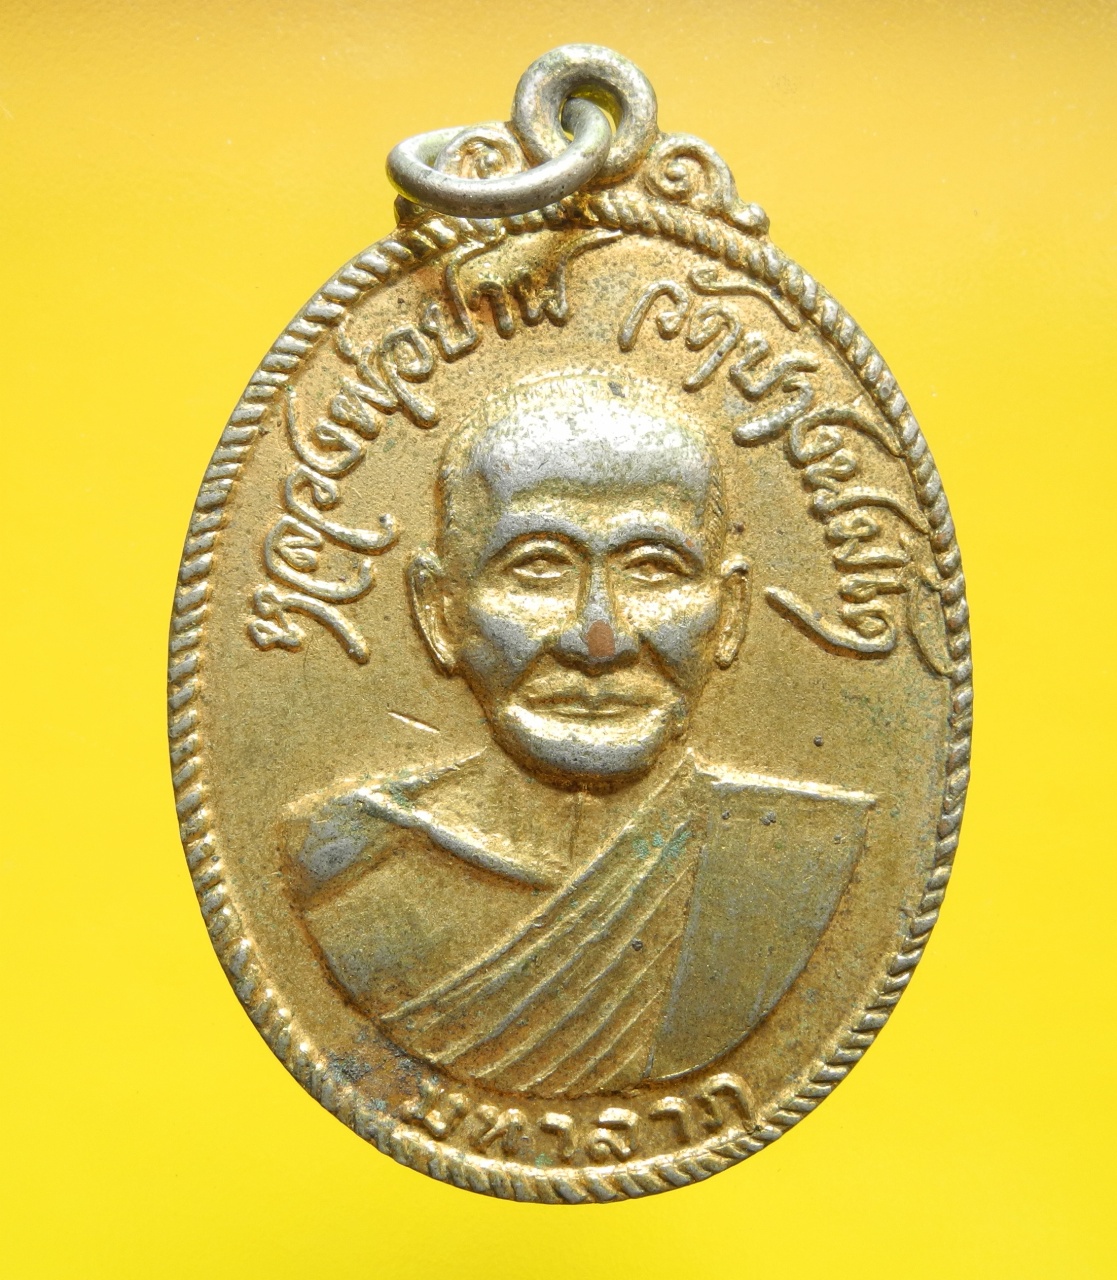 ภาพที่ 1 เหรียญหลวงพ่อปาน หลังพระมหาวีระ กะไหล่ทอง